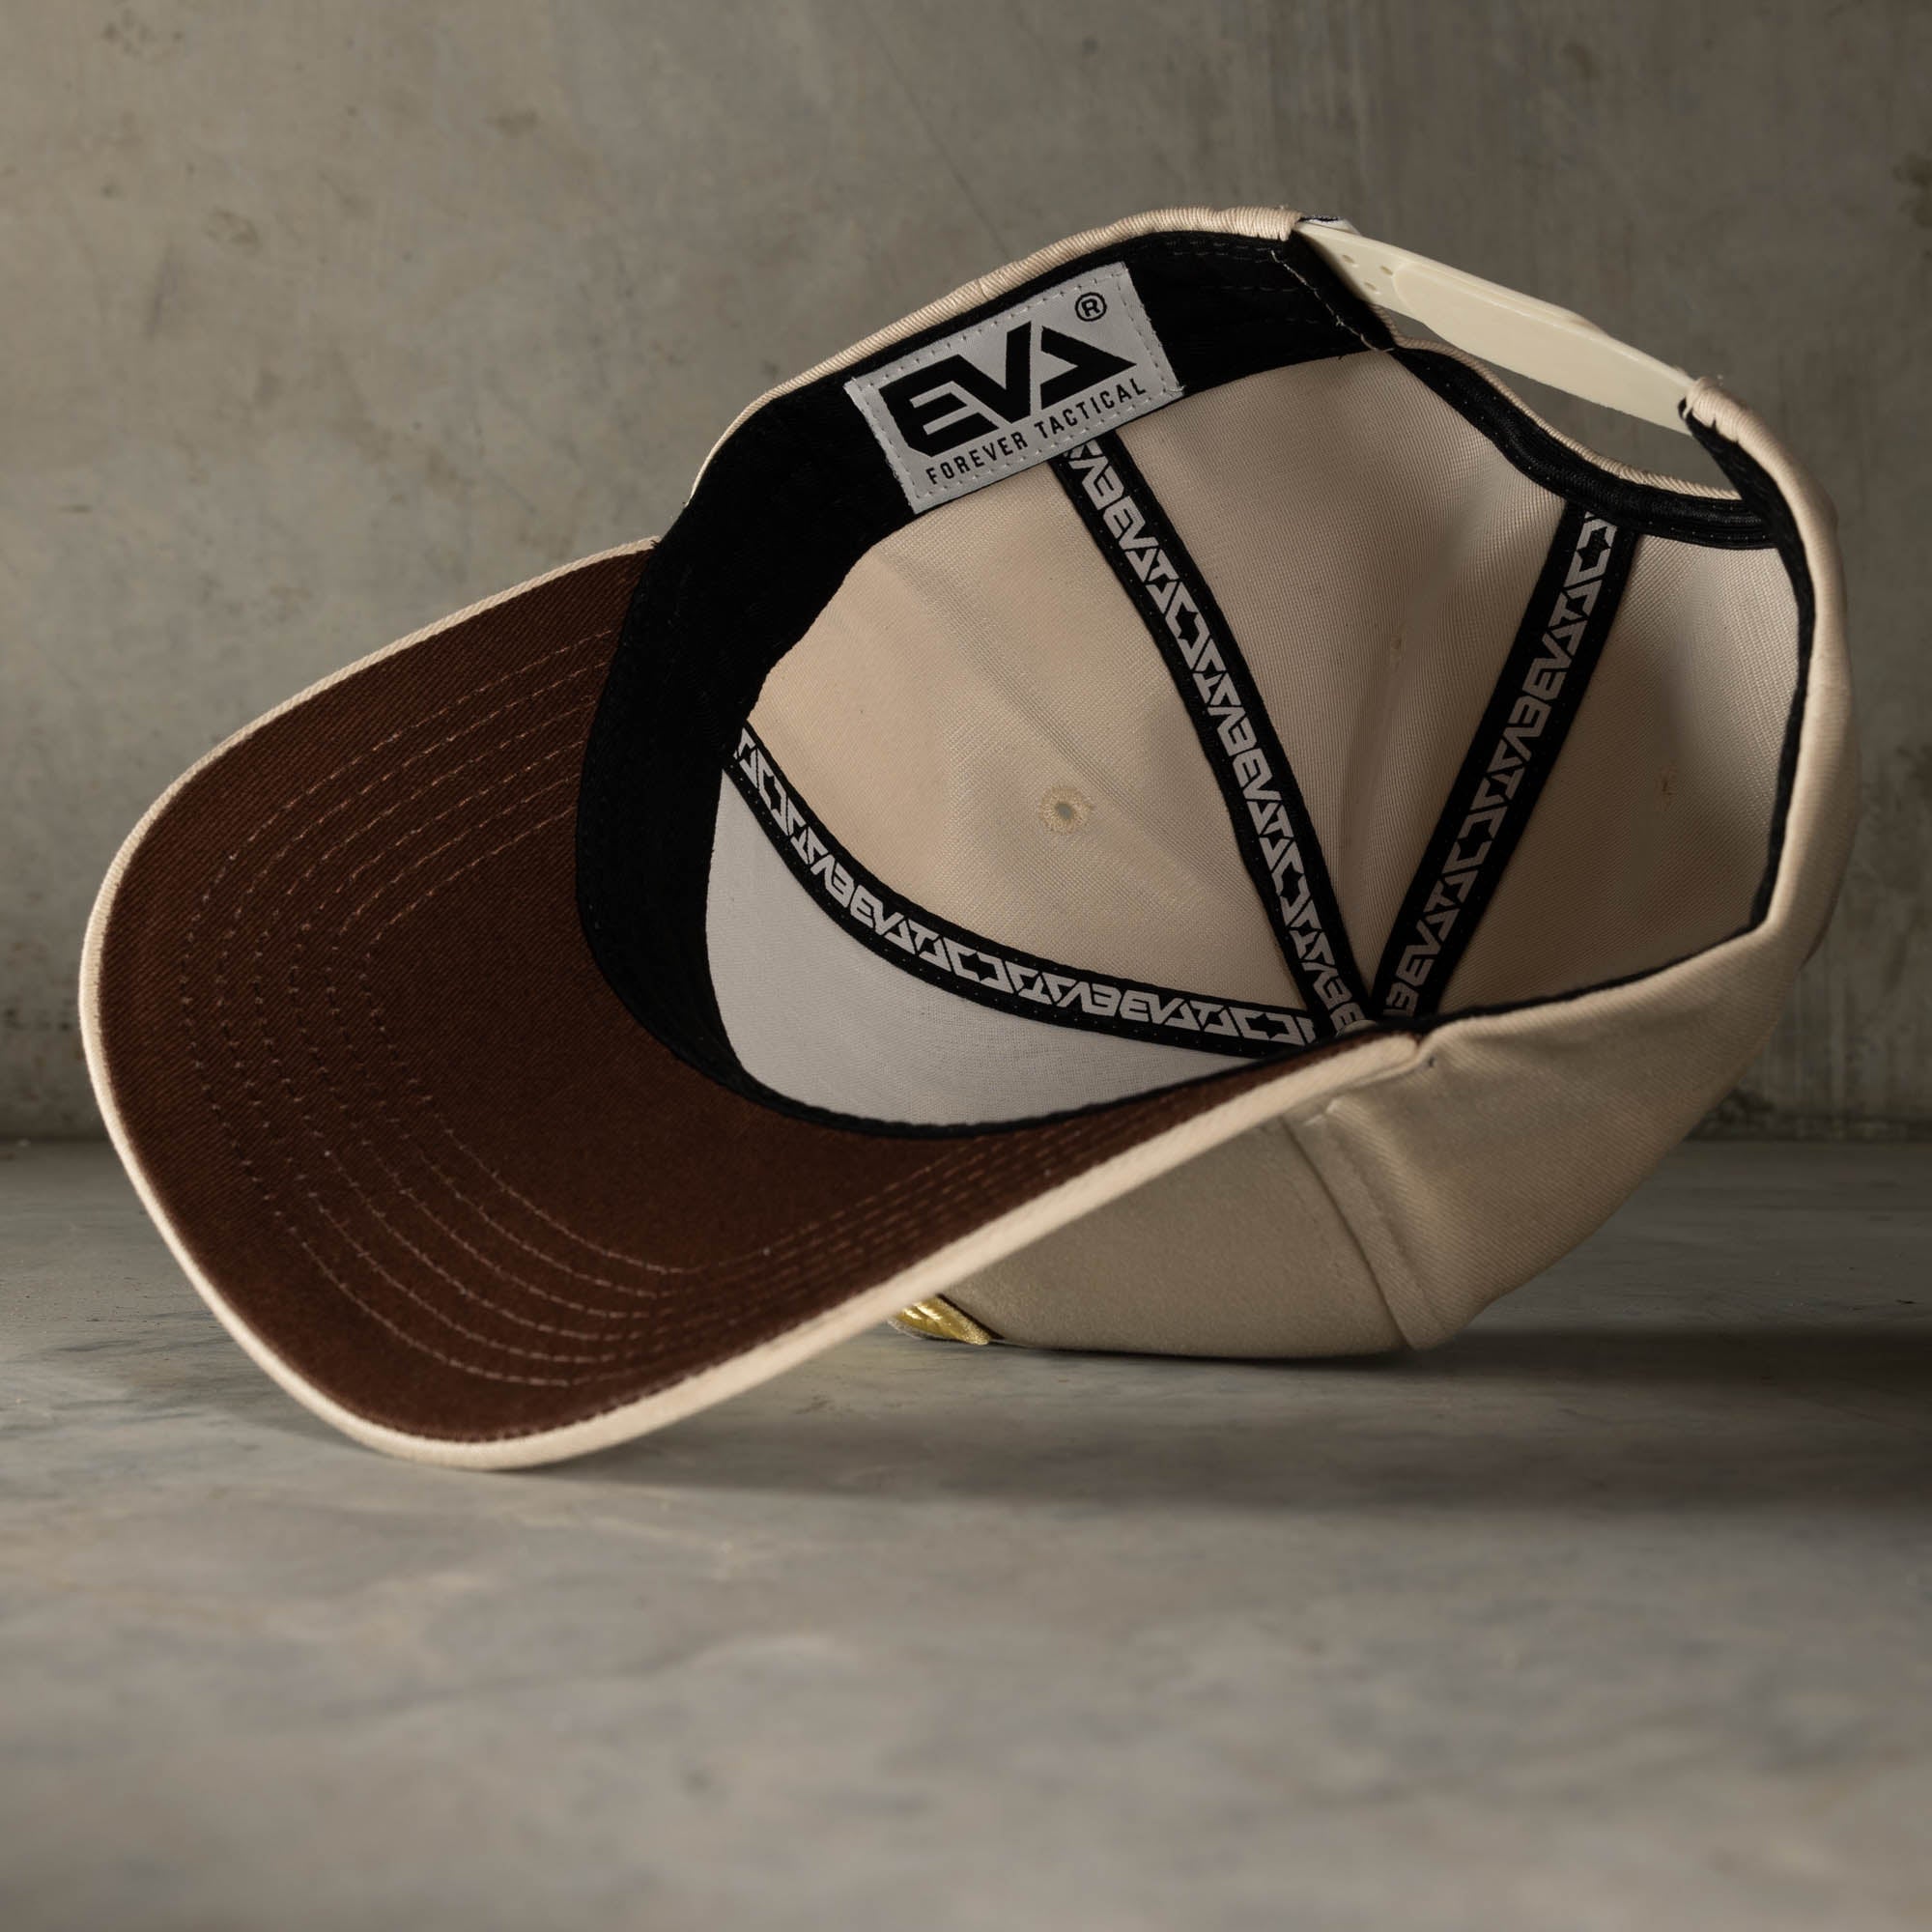 Emblem A-Frame Hat [Ivory/Gold]